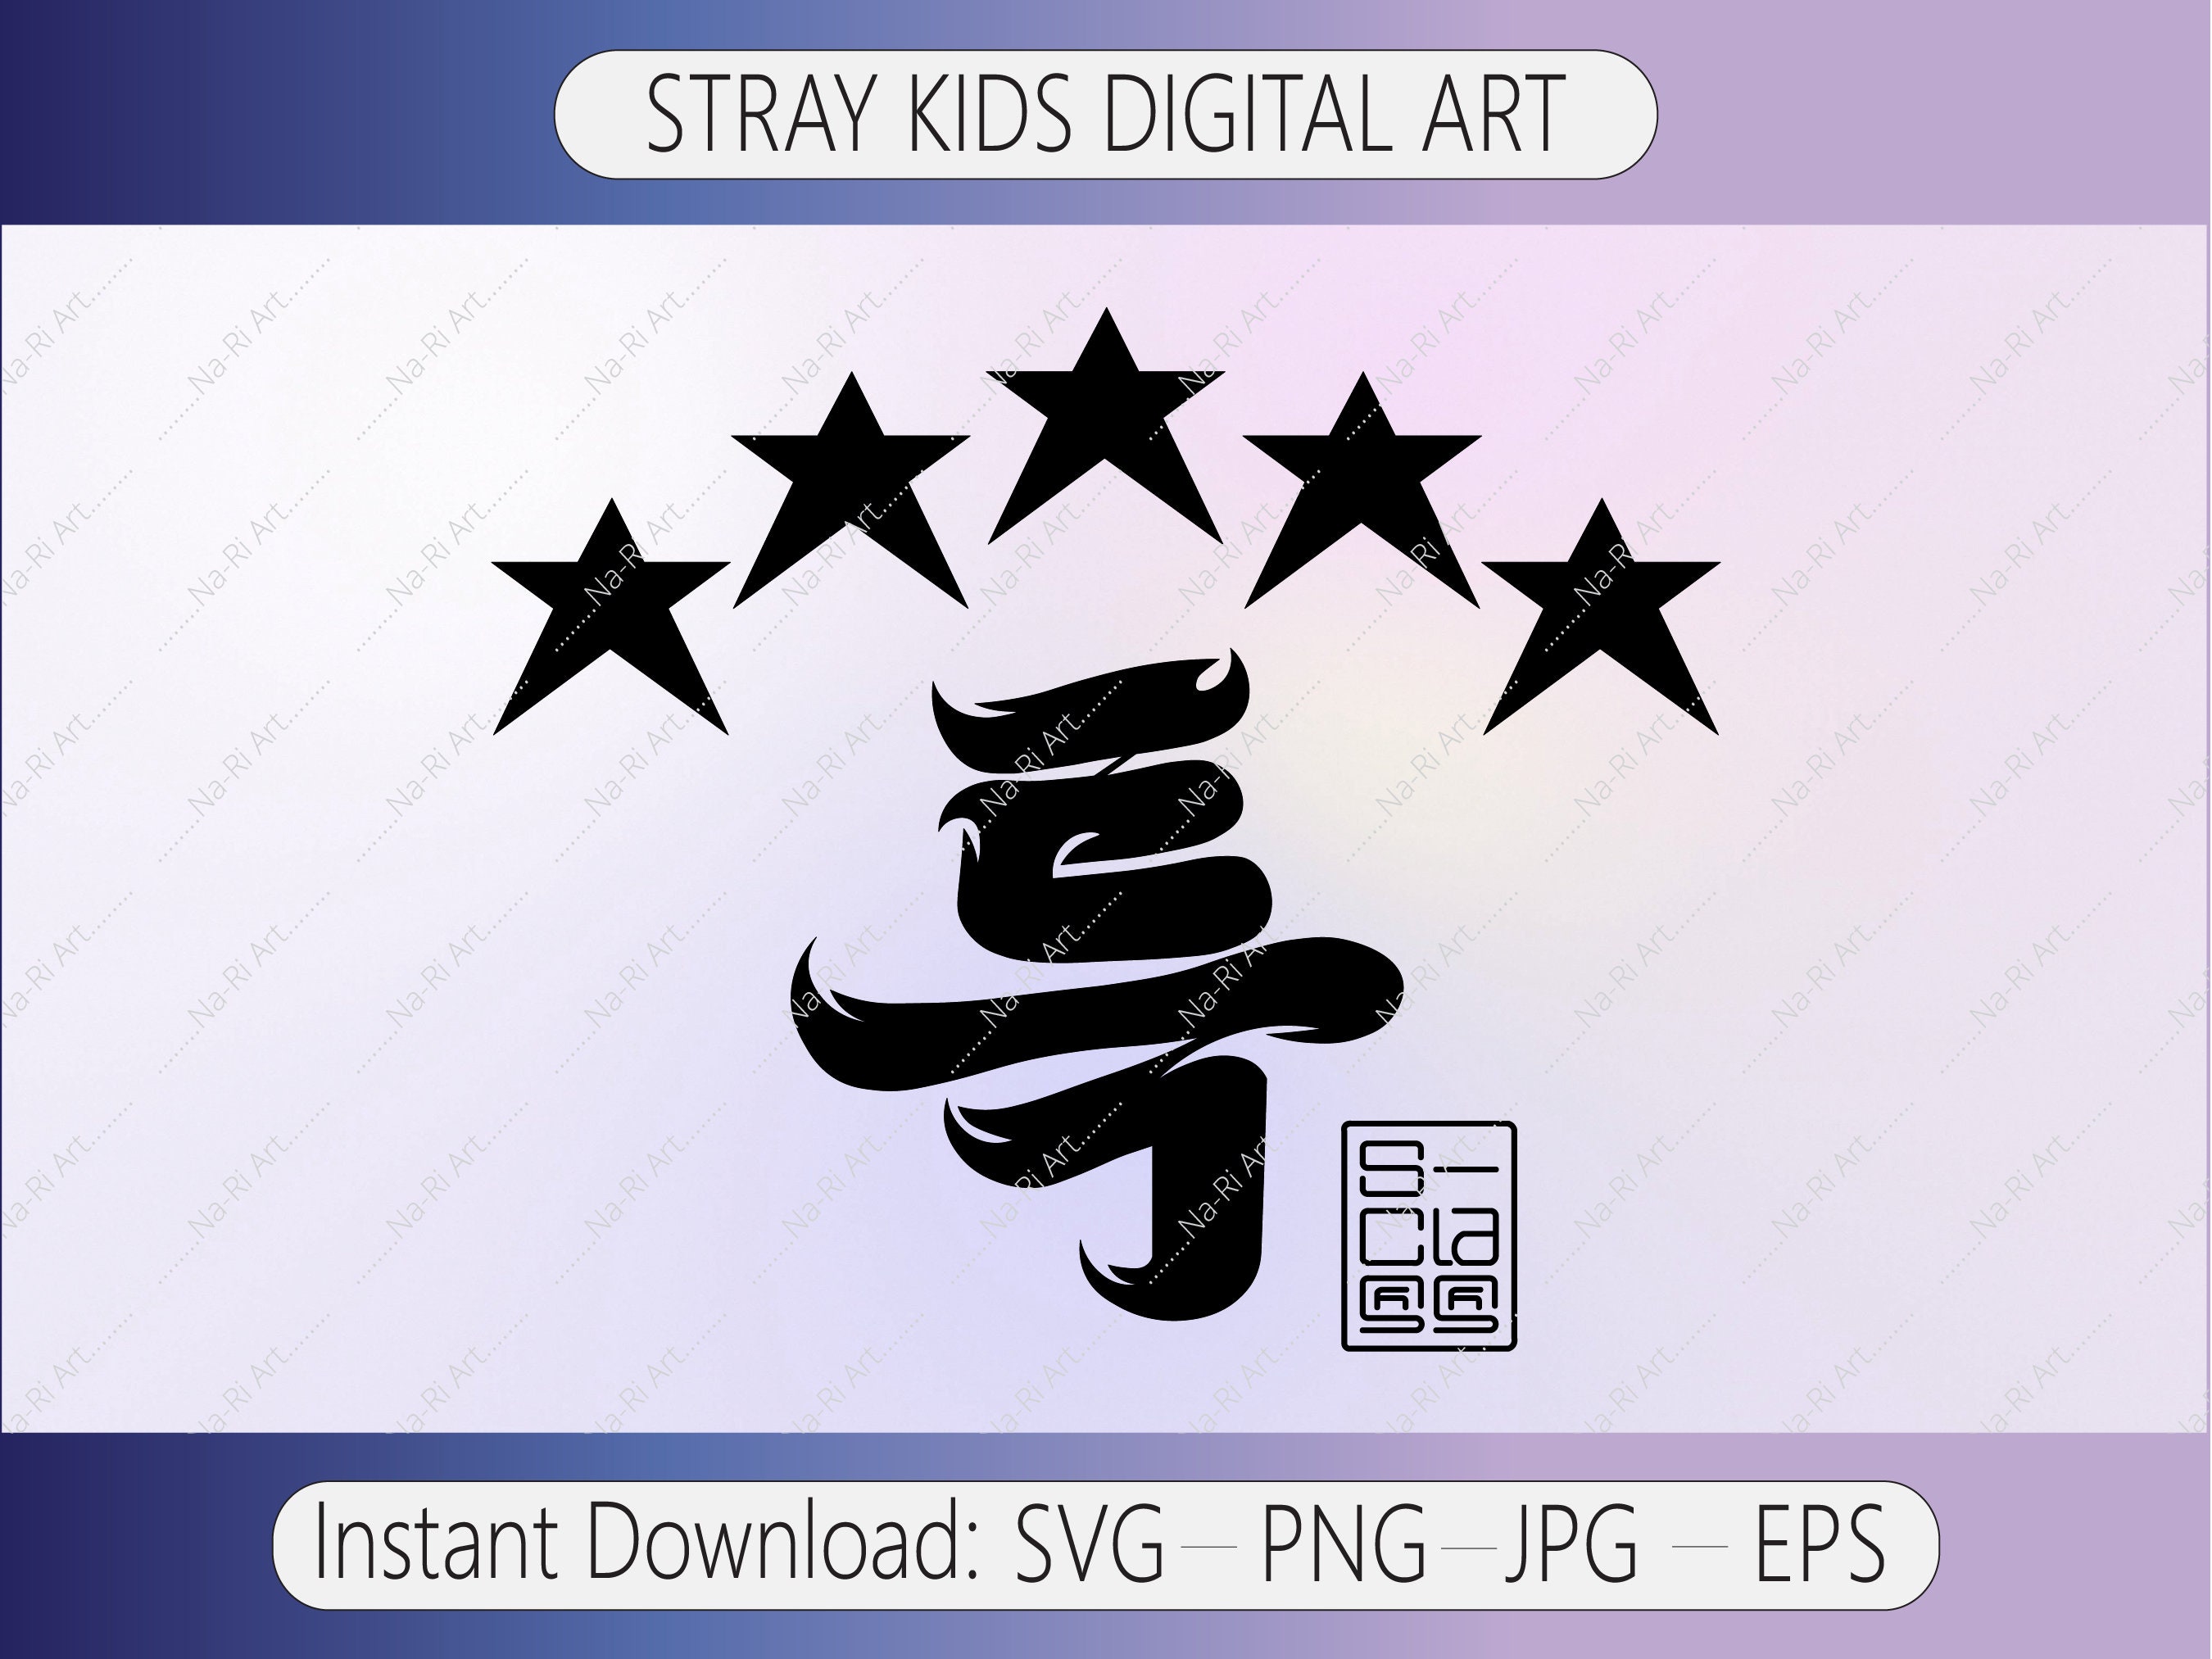 Stray Kids Stickers / Stray Kids Album Stickers / Stray Kids Logo